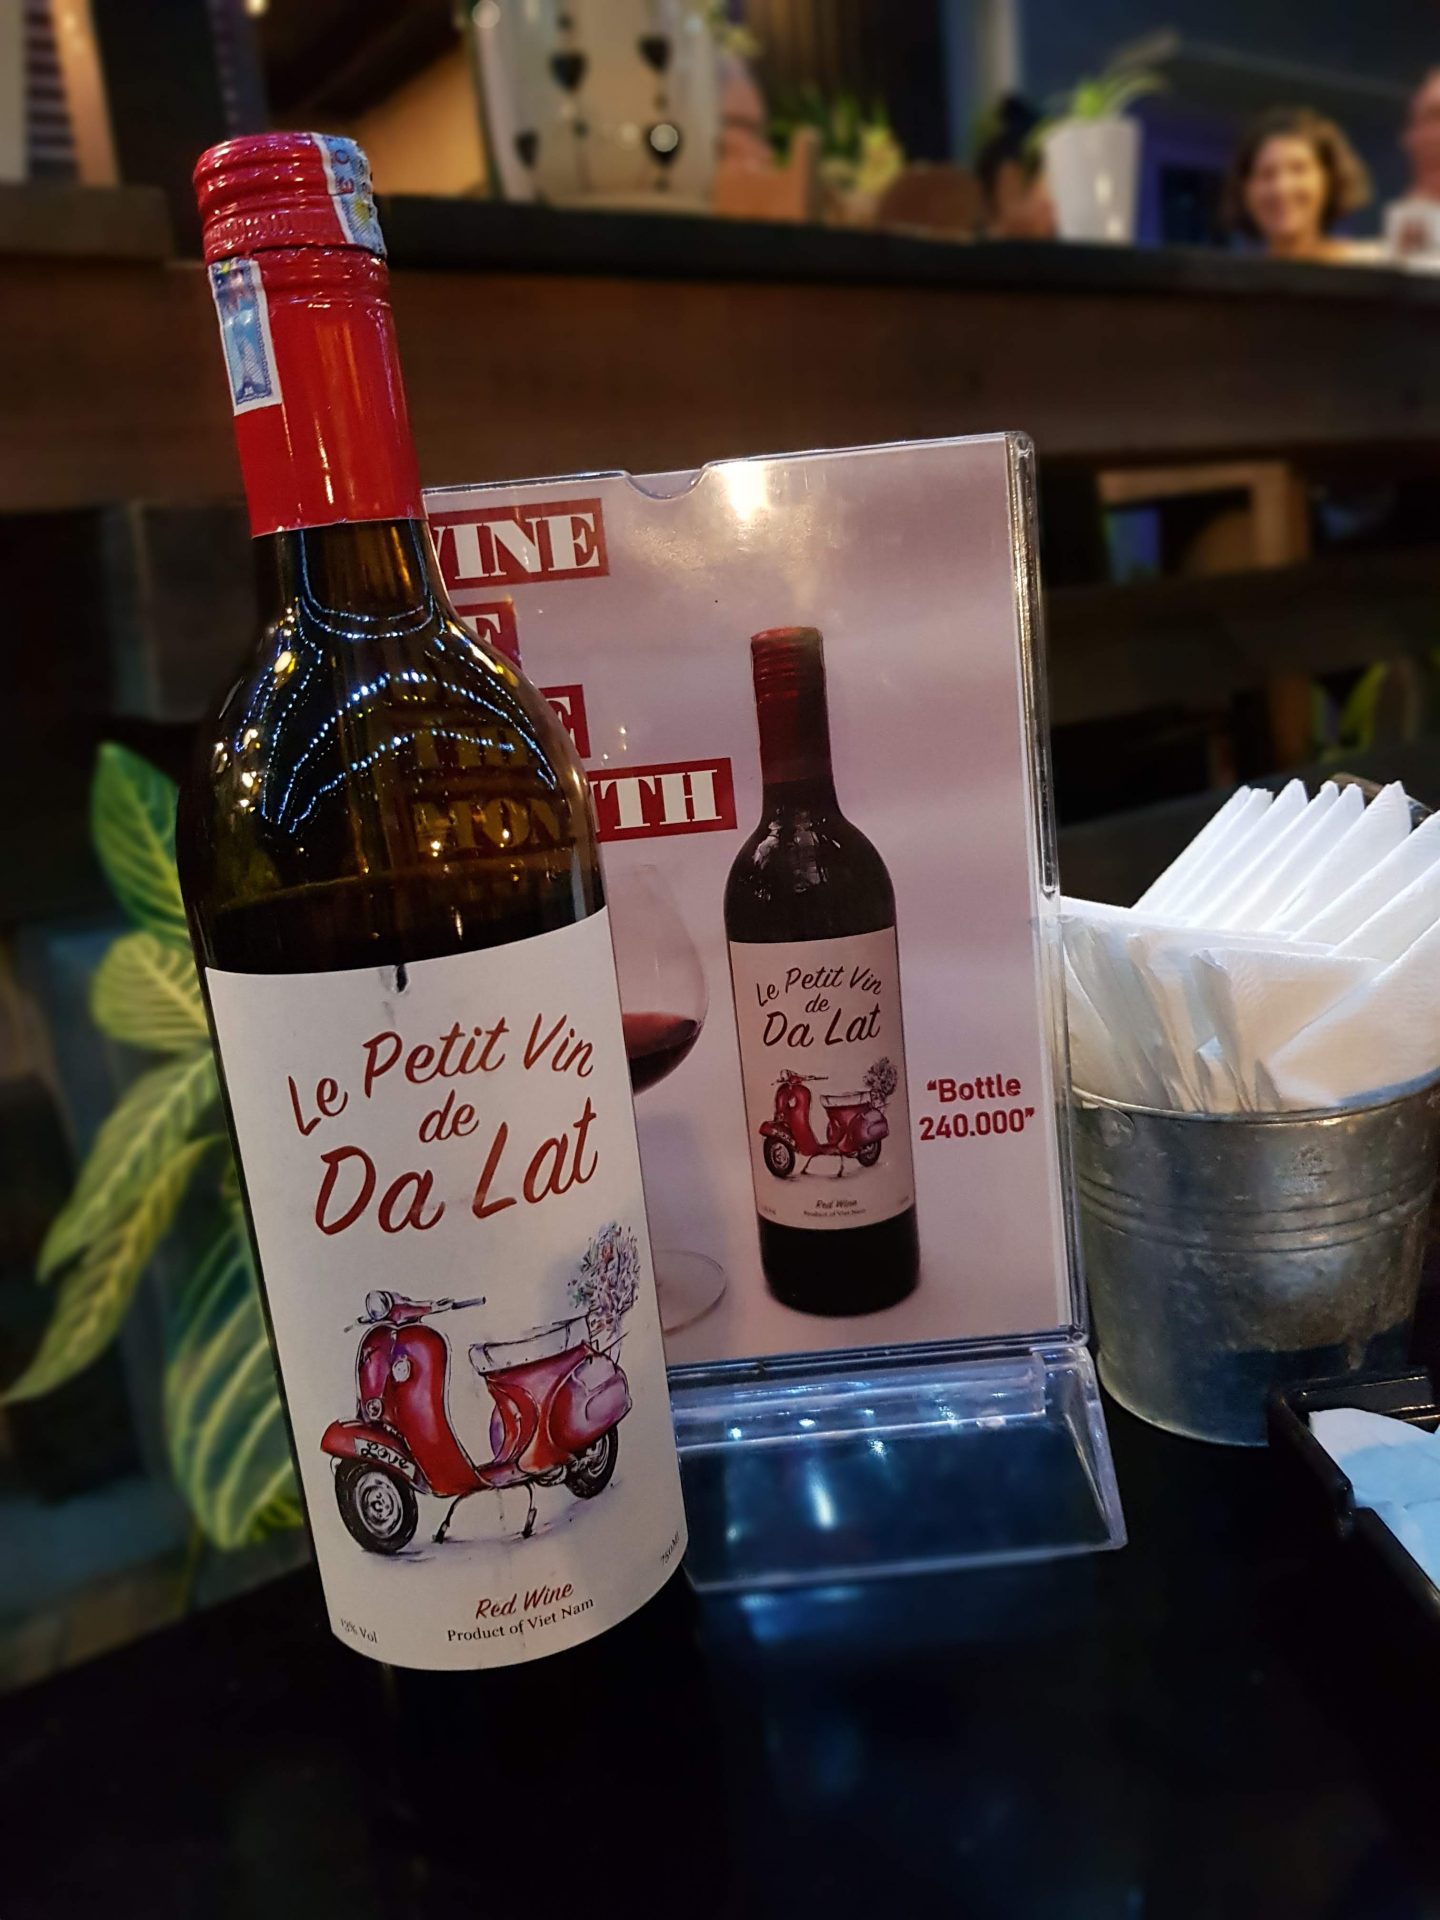 Da Lat wine in Dalat Vietnam